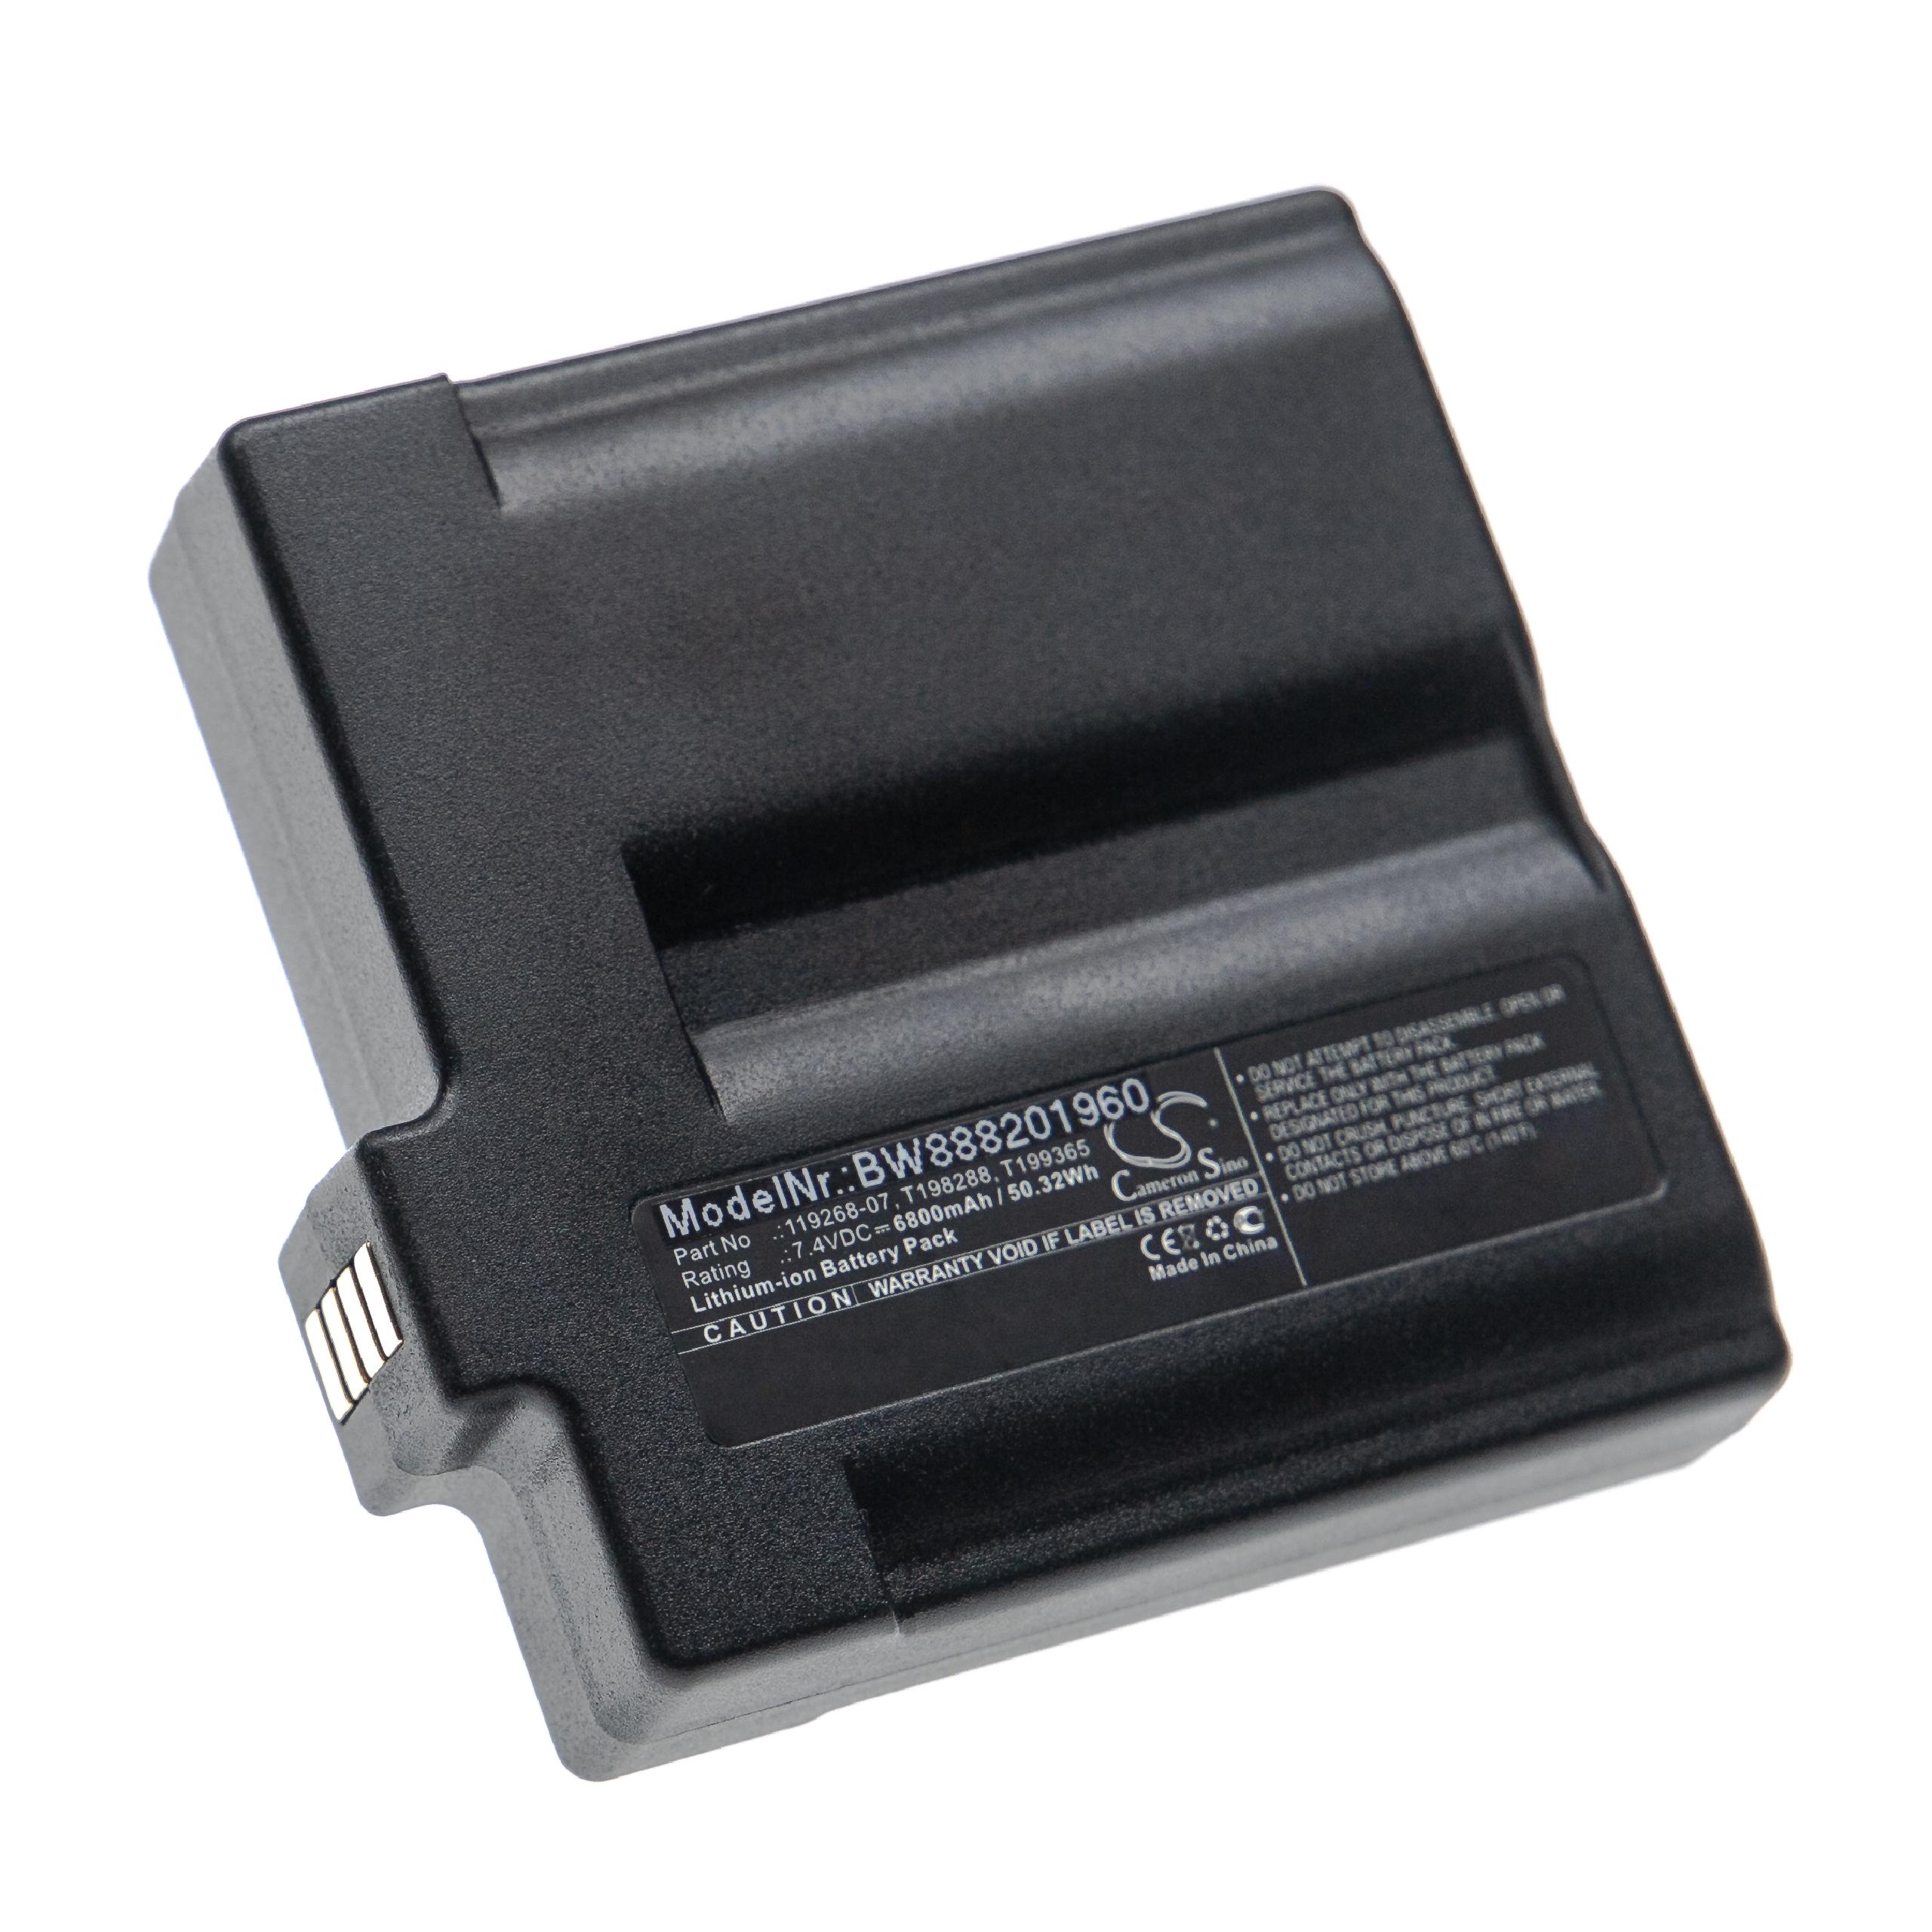 Batterie remplace Flir T198288, 119268-07, T199365AAC, T199365 pour caméra infrarouge - 6800mAh 7,4V Li-ion